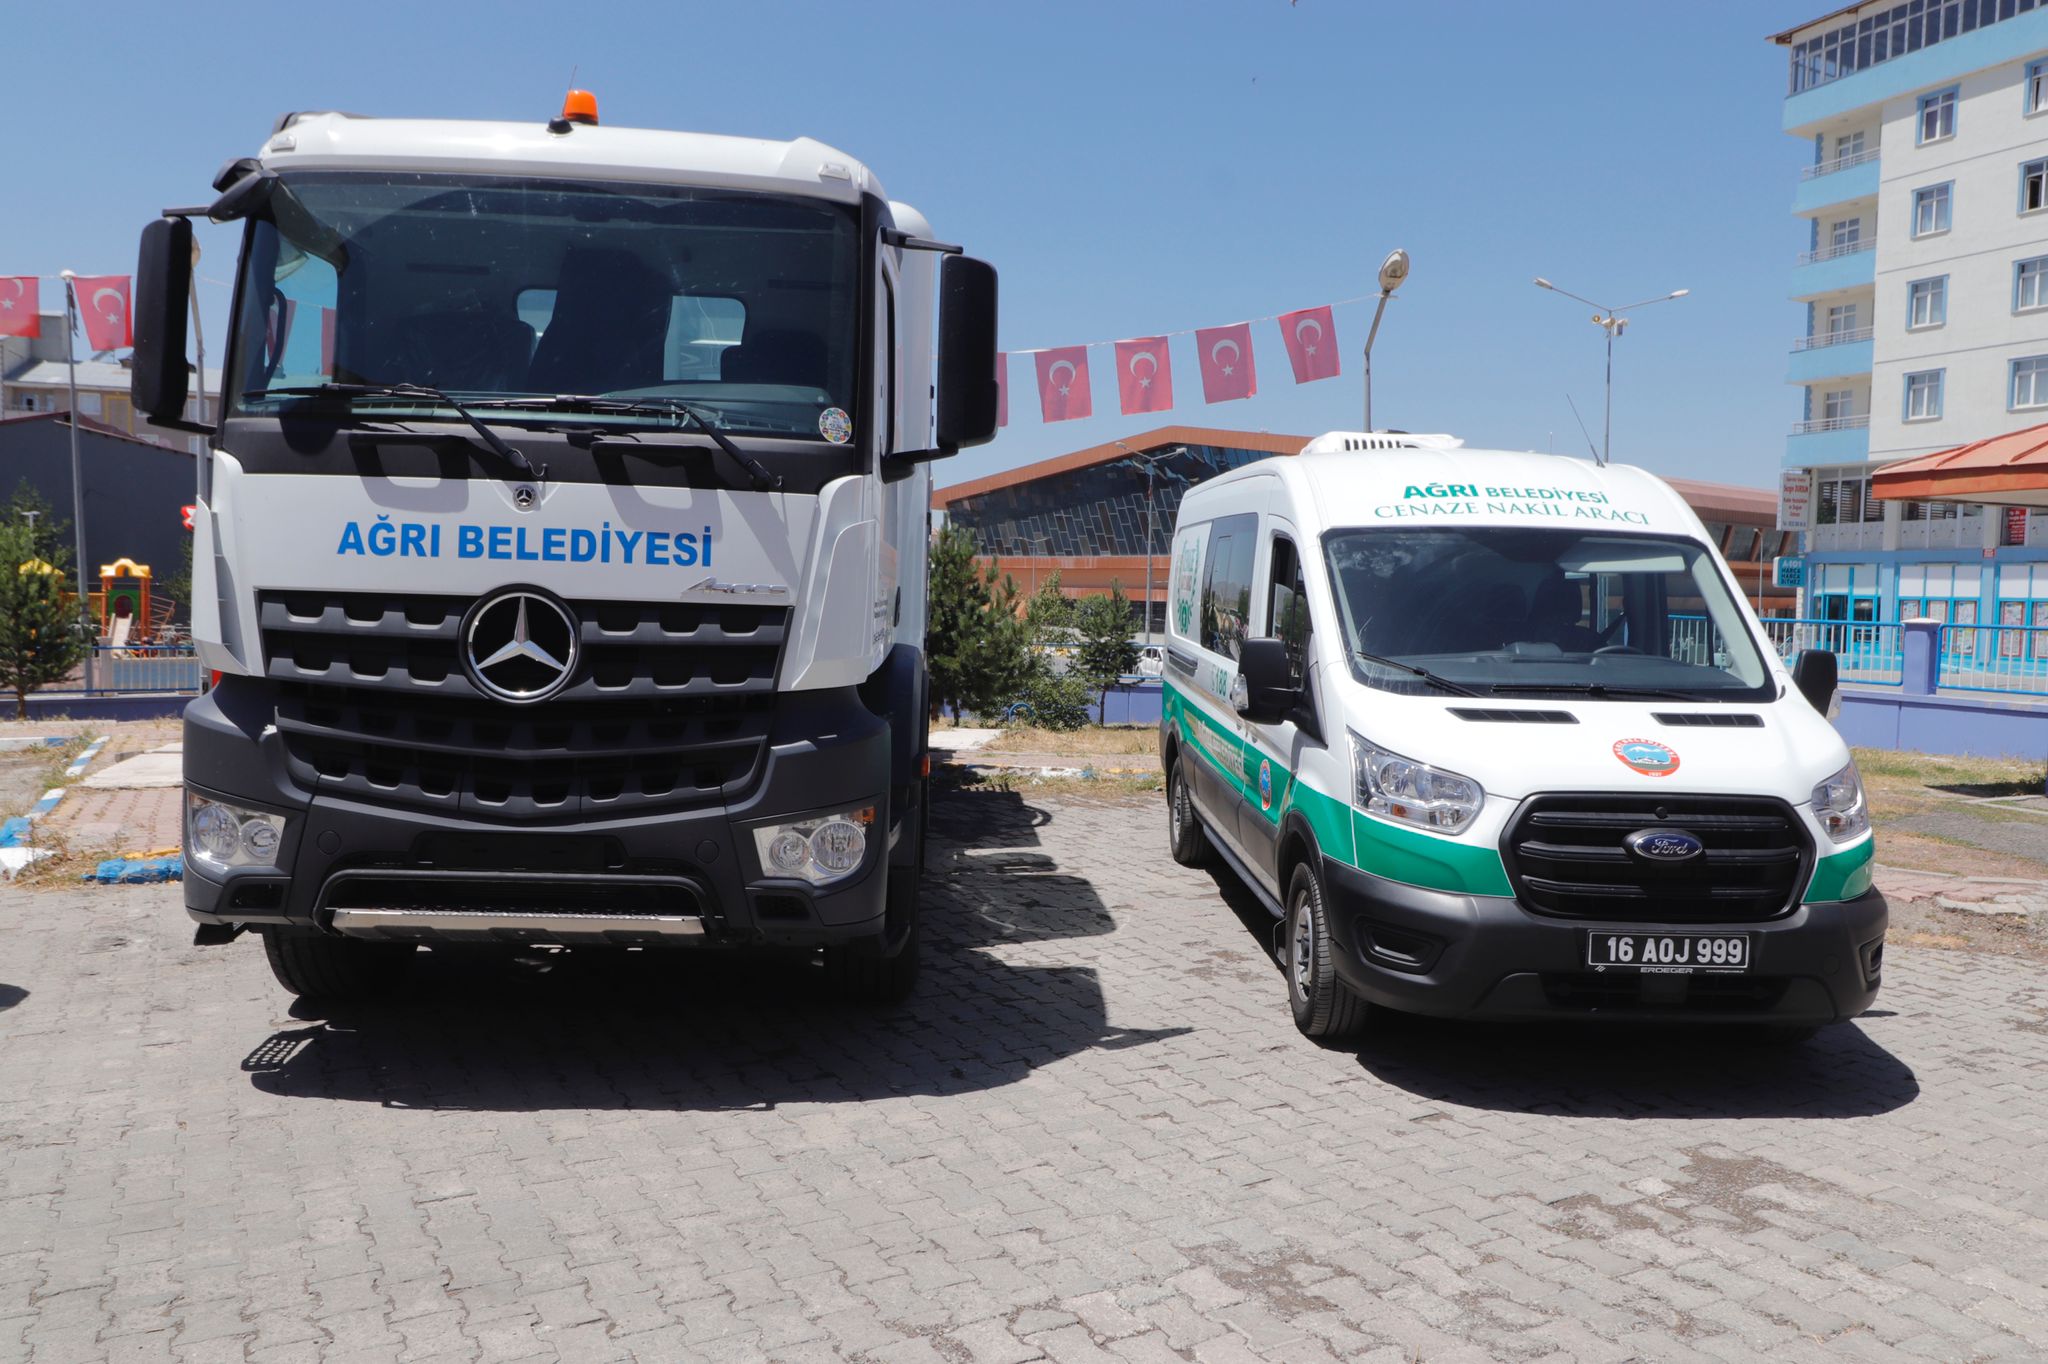  Ağrı Belediyesi Filosuna Cenaze Nakil ve Kanal Açma Aracı Ekledi